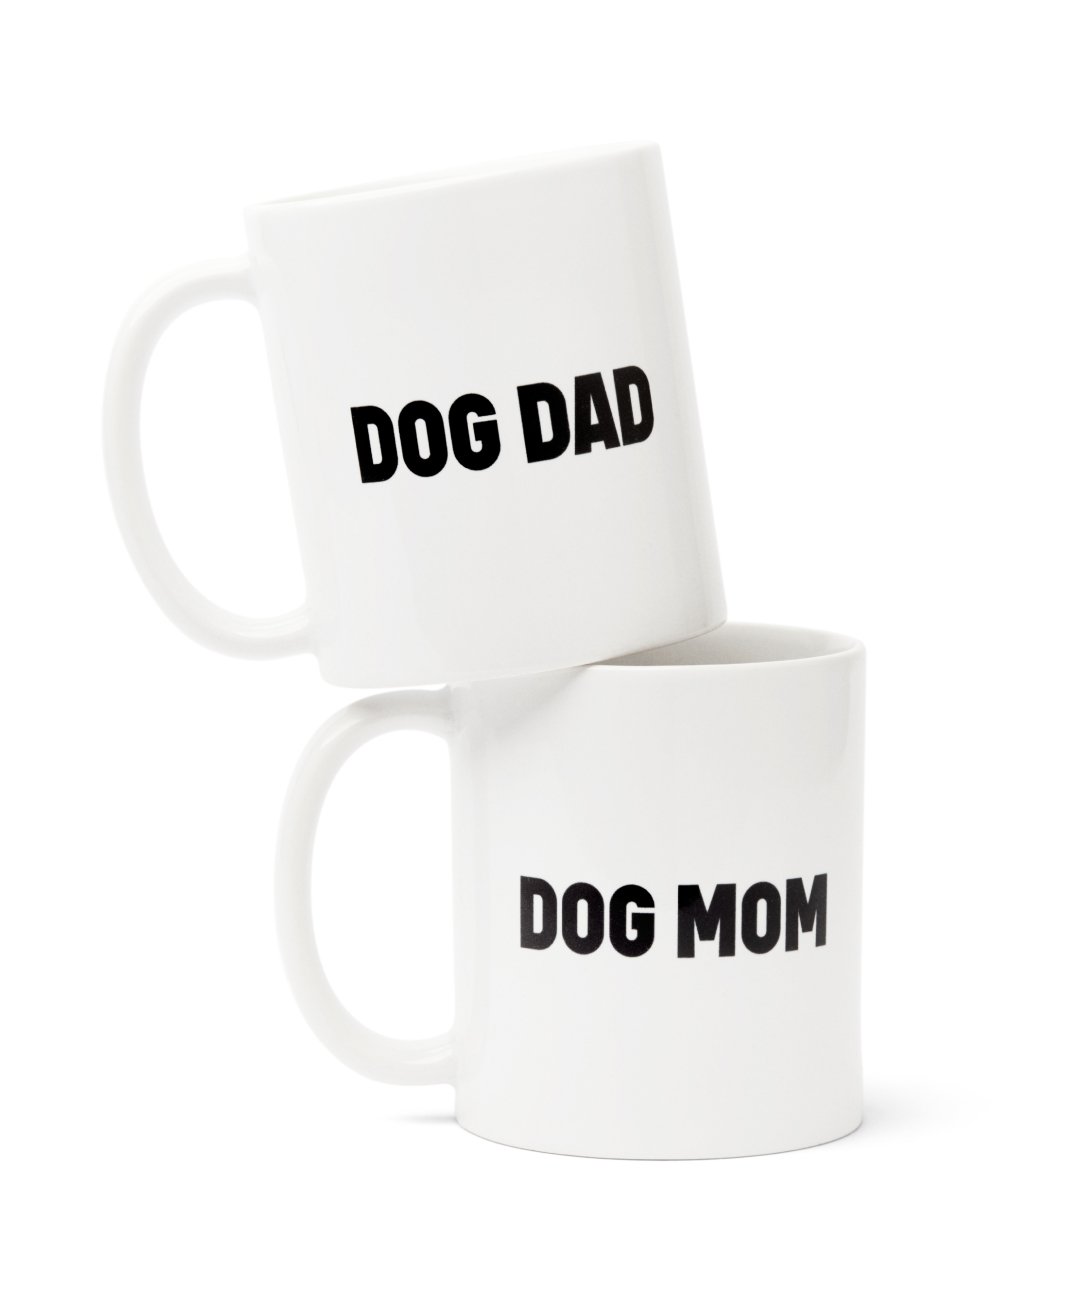 http://store.rover.com/cdn/shop/products/dog-mom-dog-dad-mug-set-mug-rover-store-342427.jpg?v=1631731563